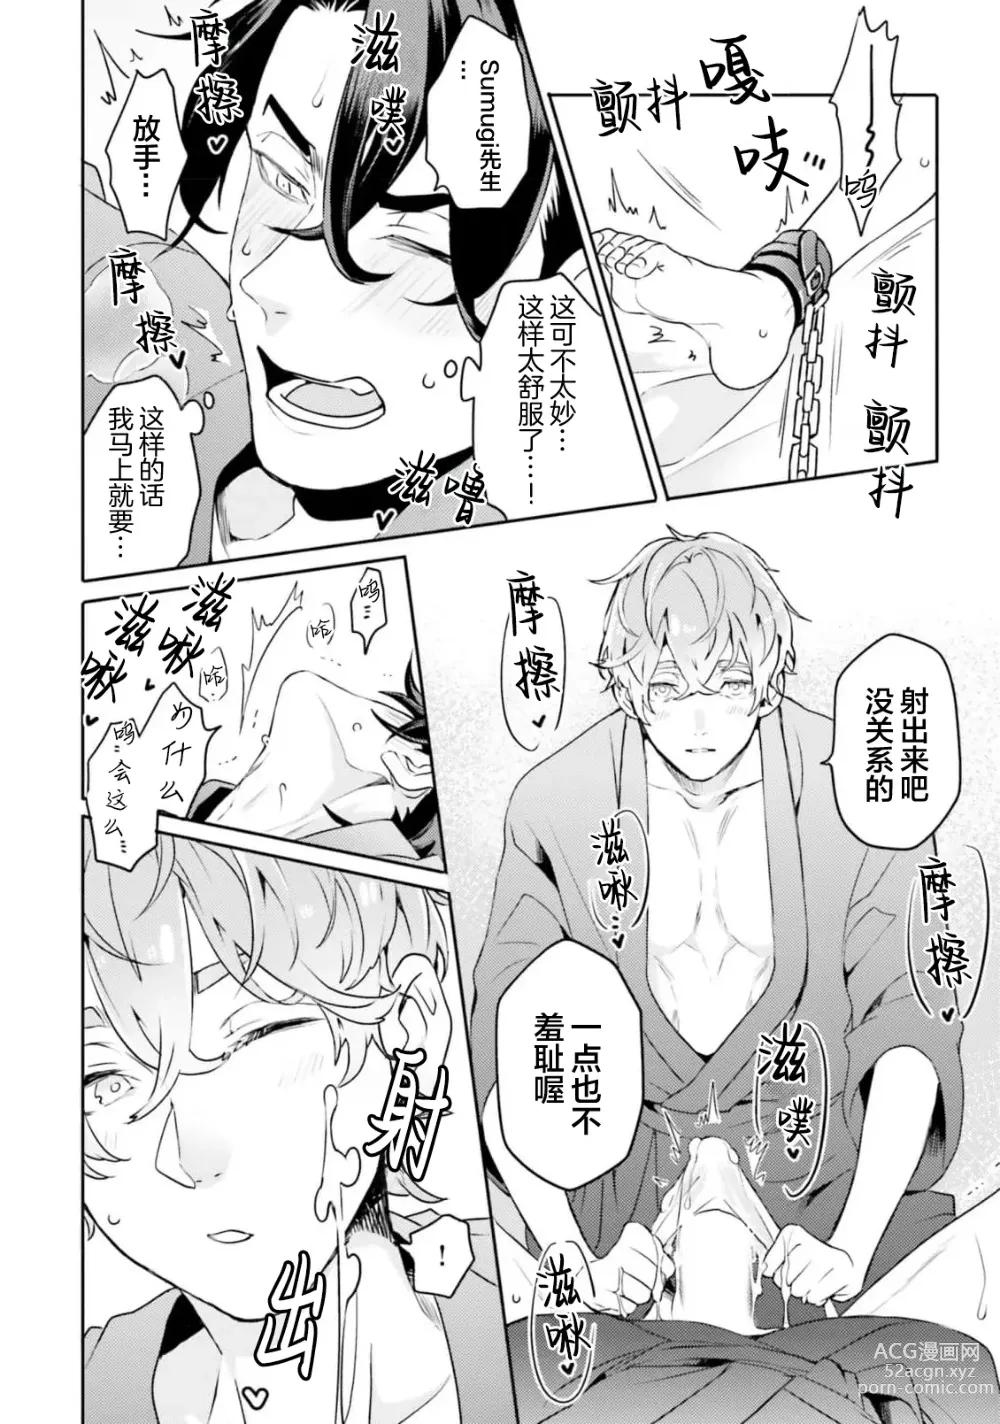 Page 16 of manga Tachikawa Koutarou no Perfect Night